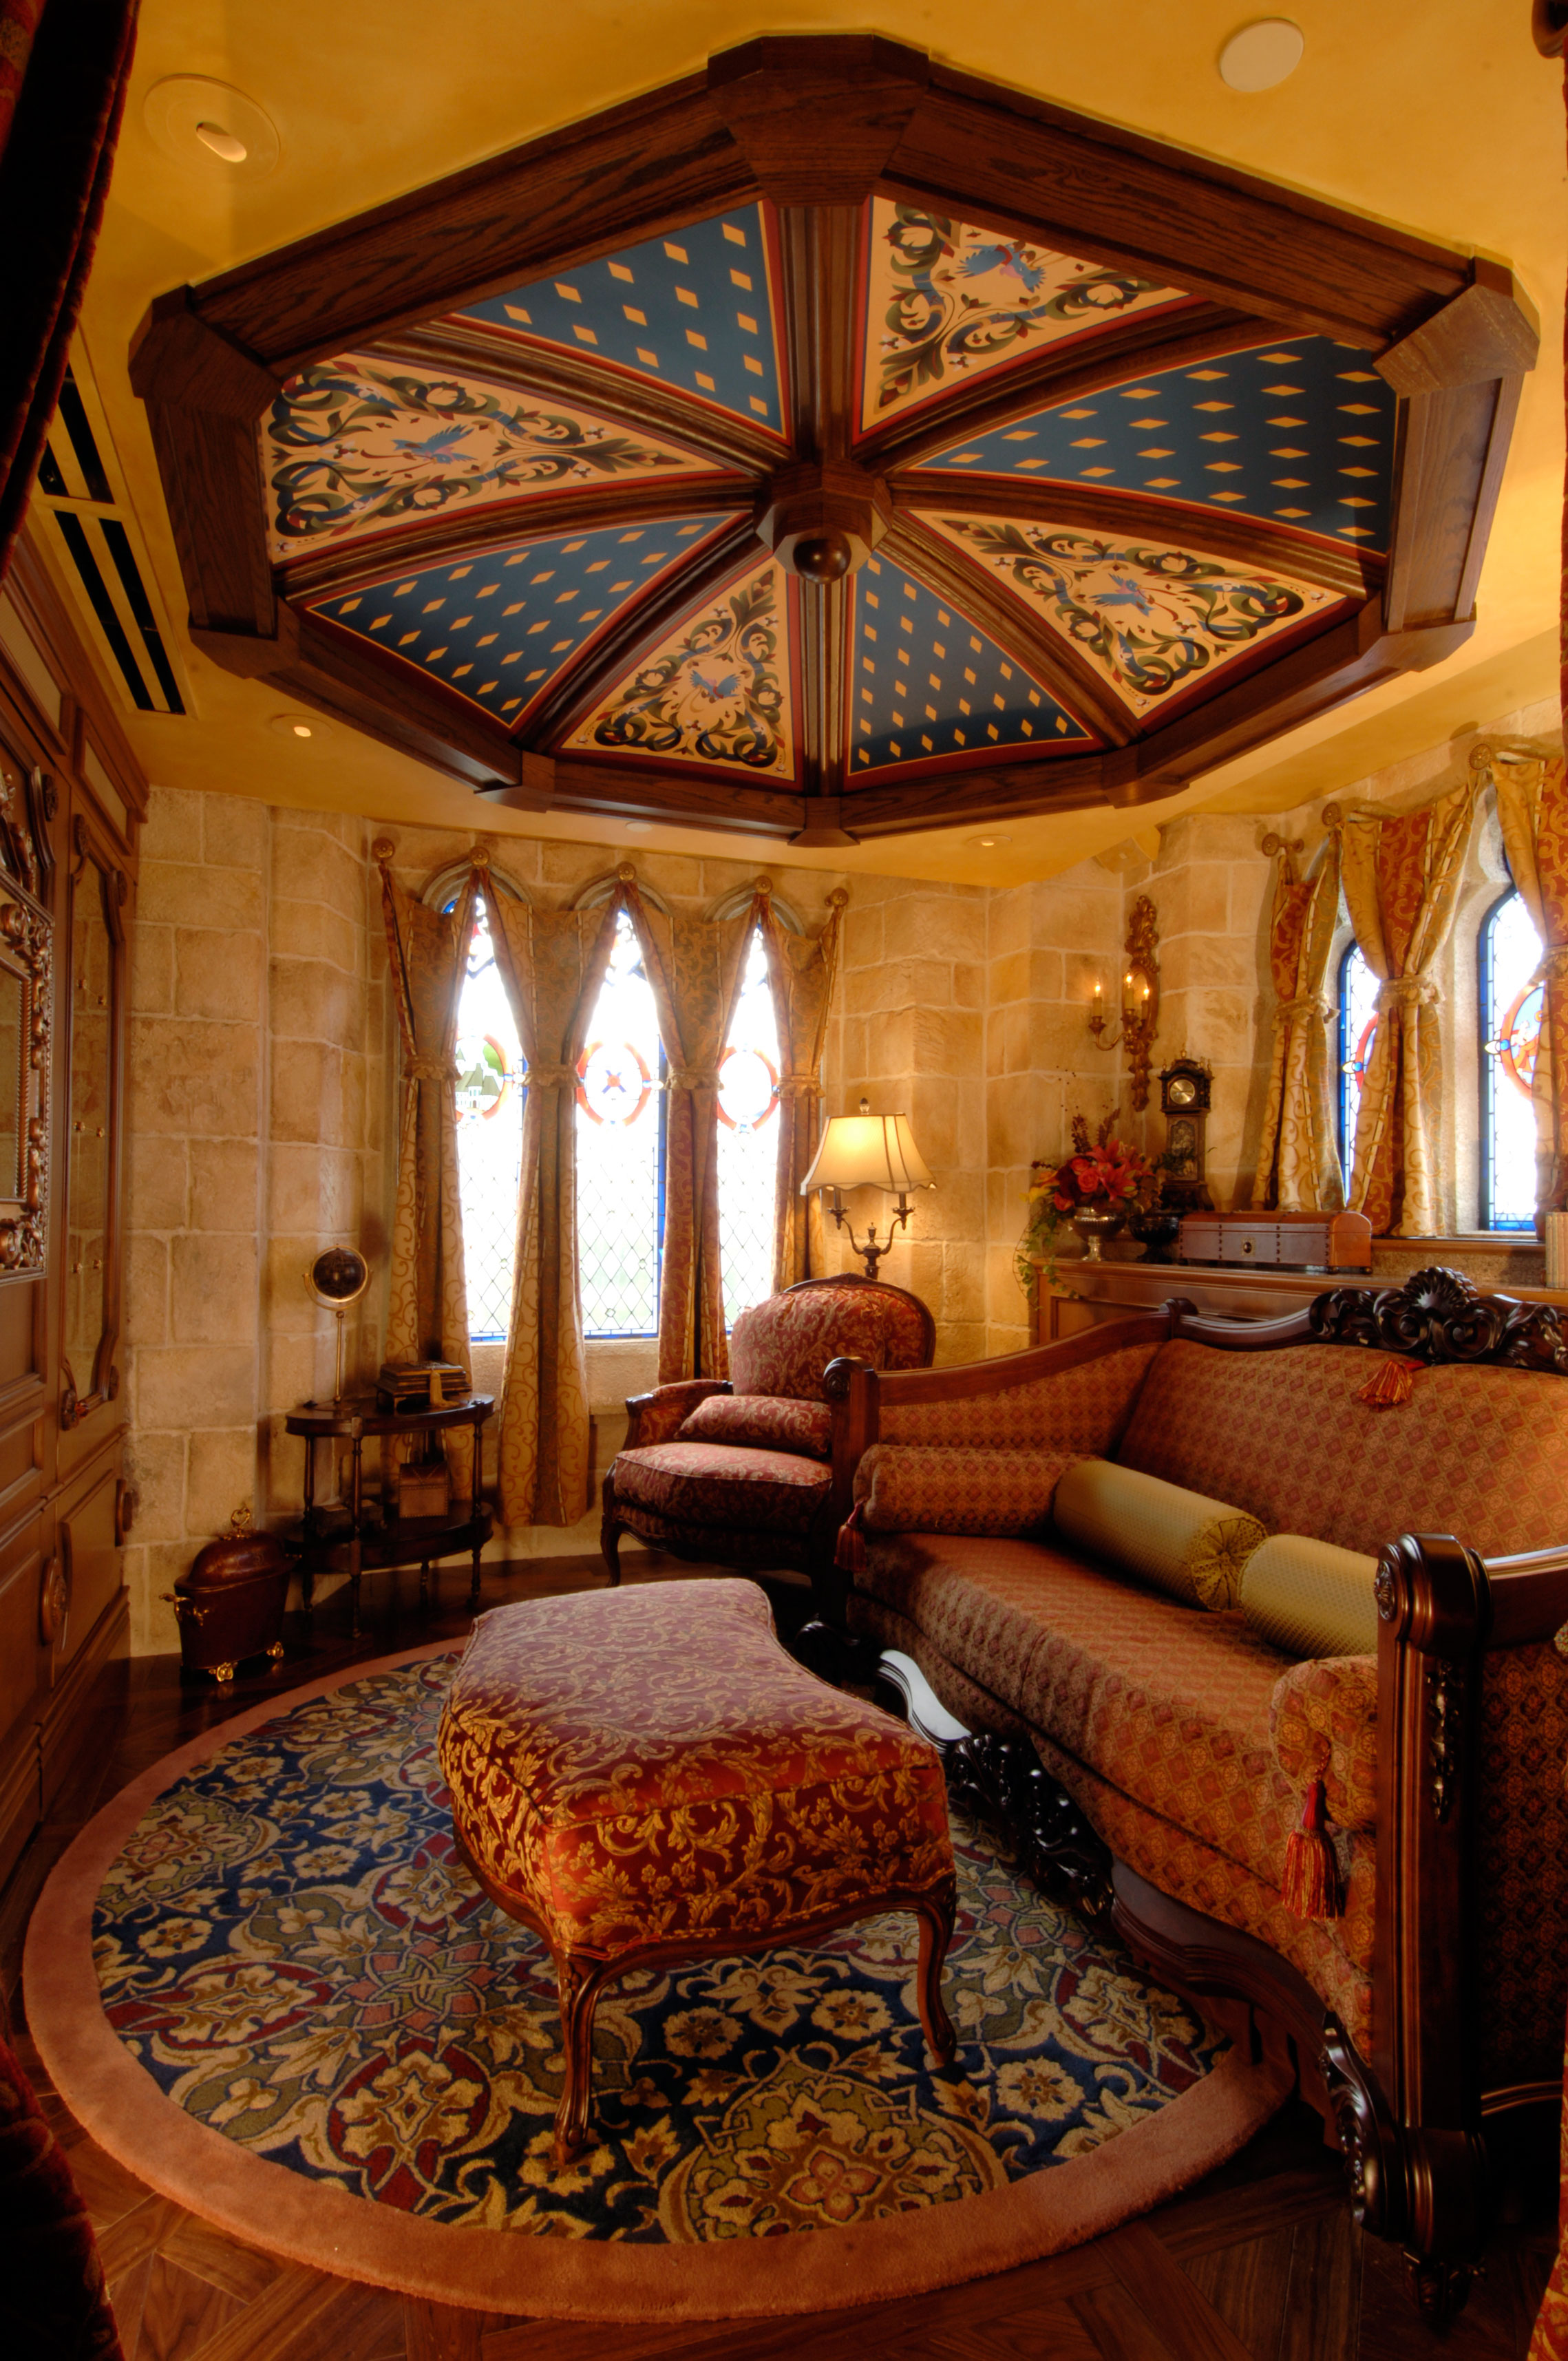 cinderella castle suite